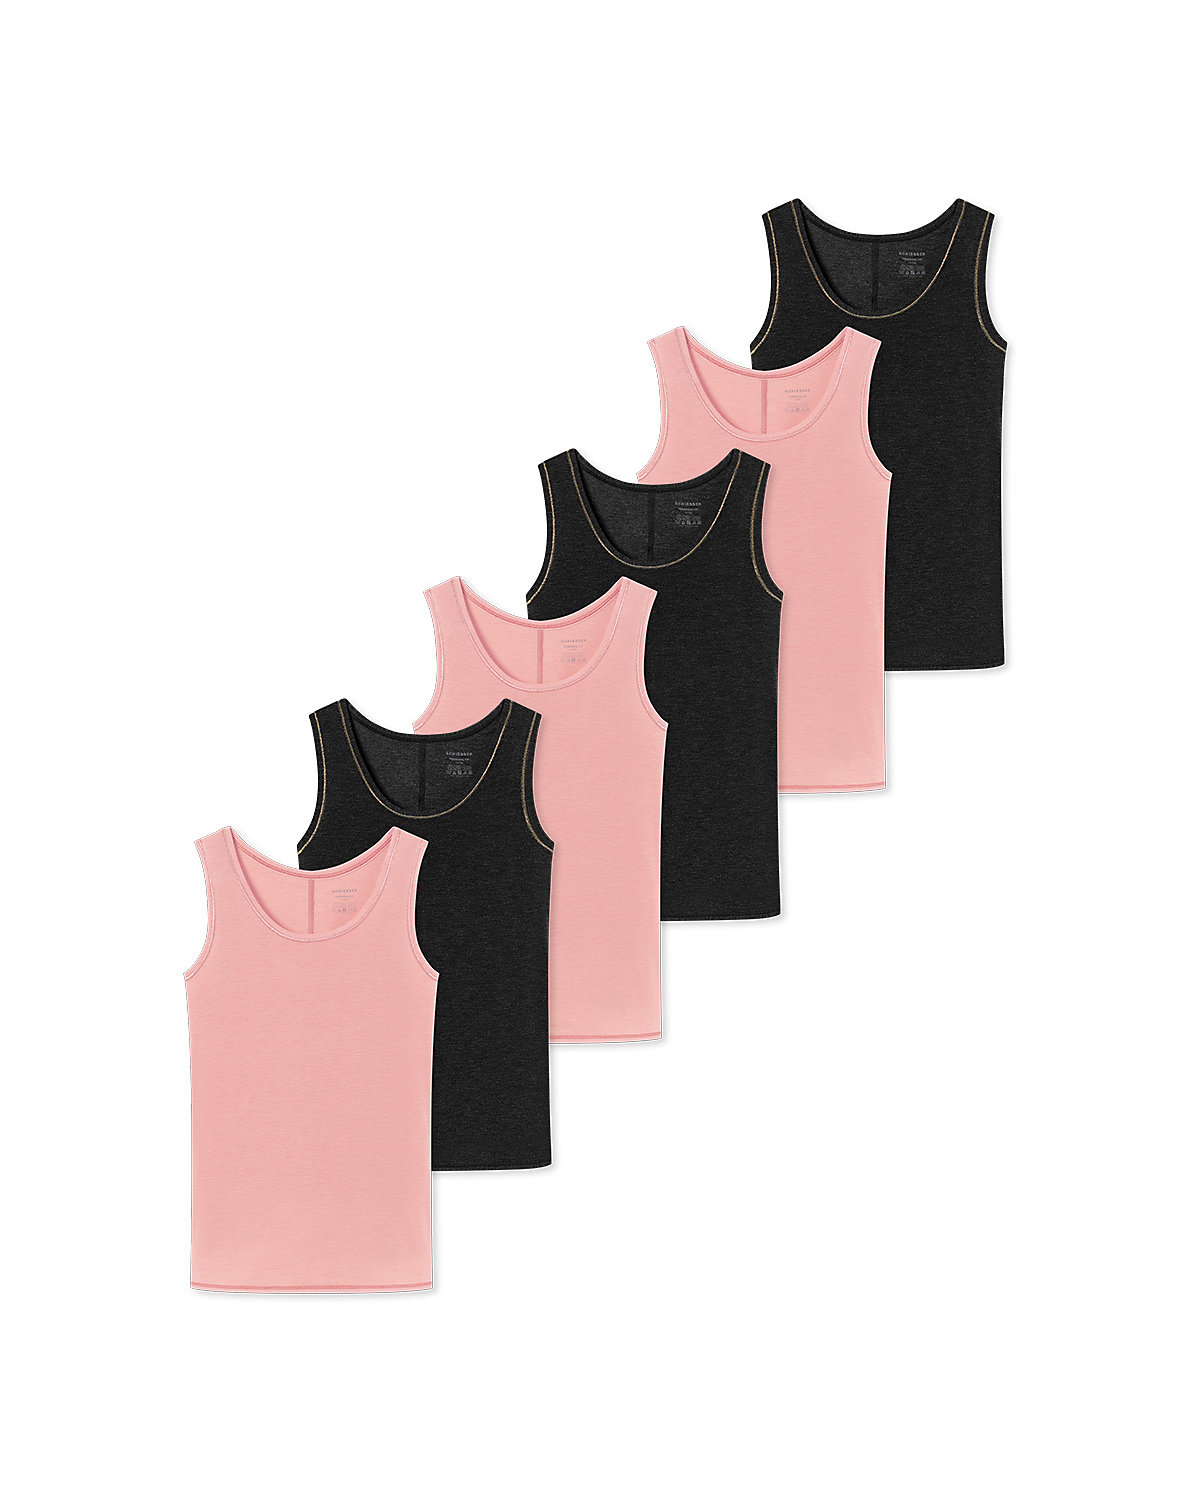 SCHIESSER Unterhemd / Tanktop 6er Pack Personal Fit Unterhemden für Mädchen